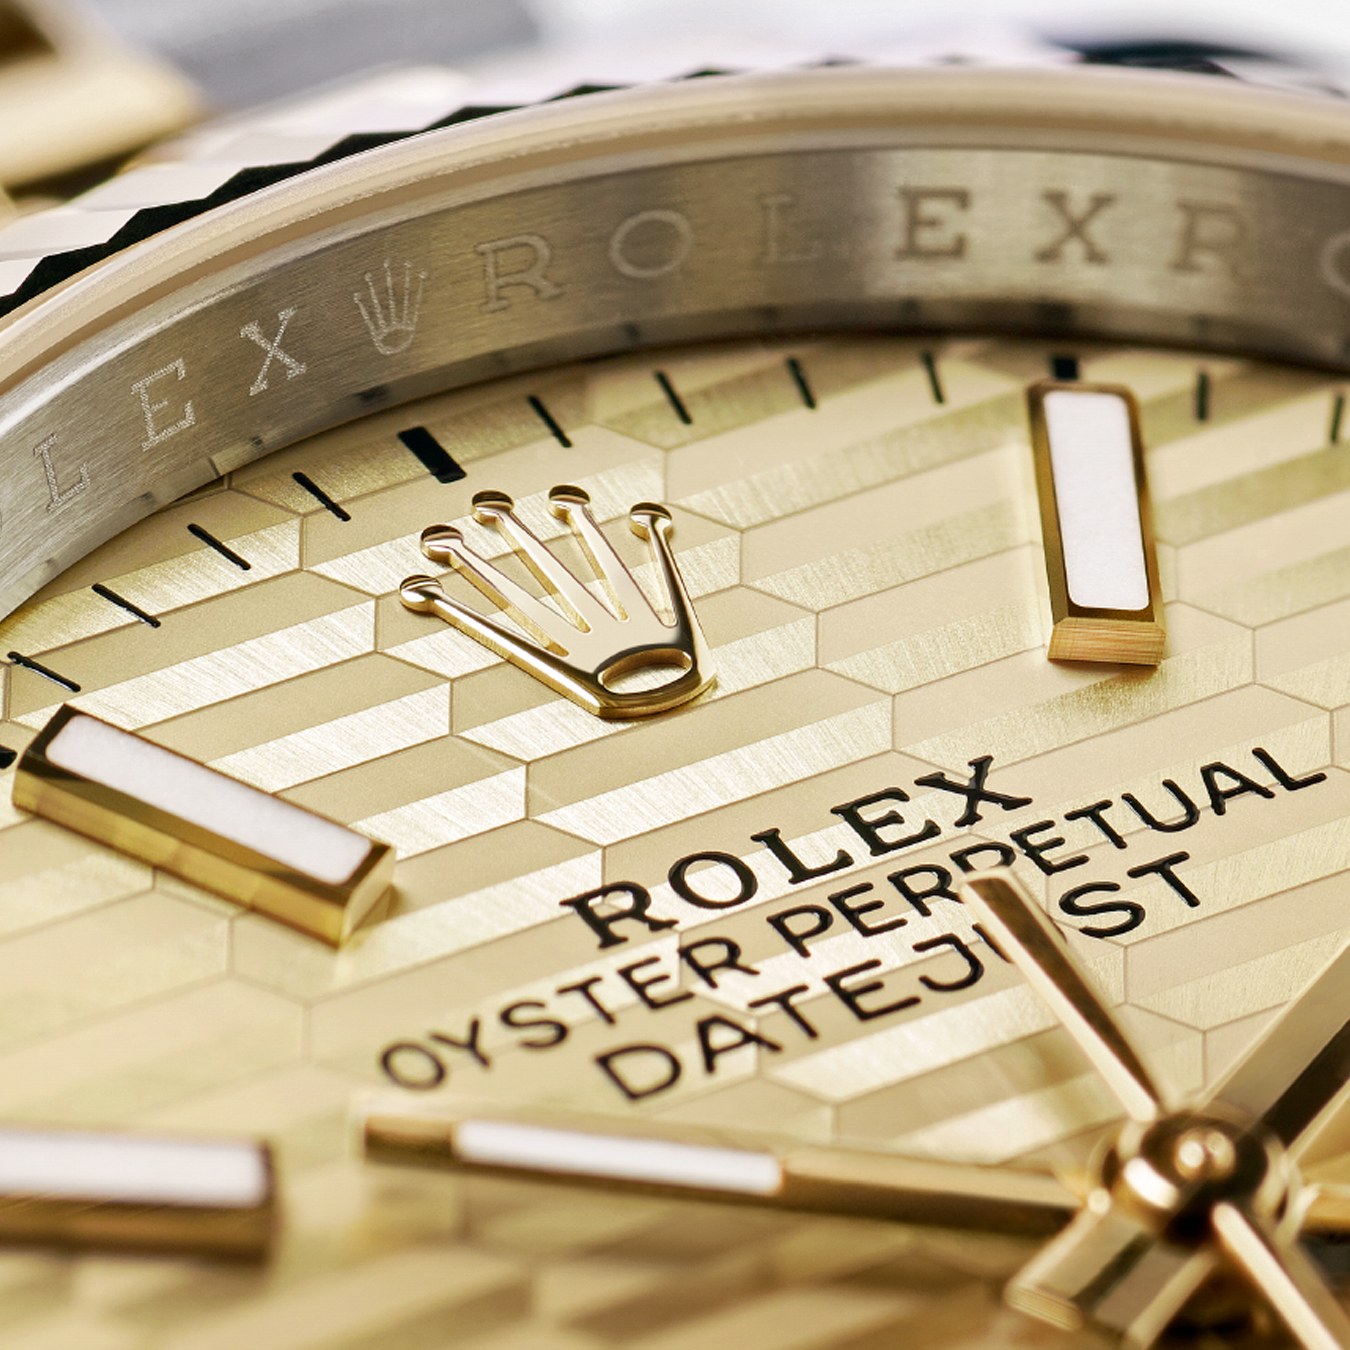 El reloj Rolex Oyster Perpetual como el arquetipo del reloj hermético, preciso y robusto.